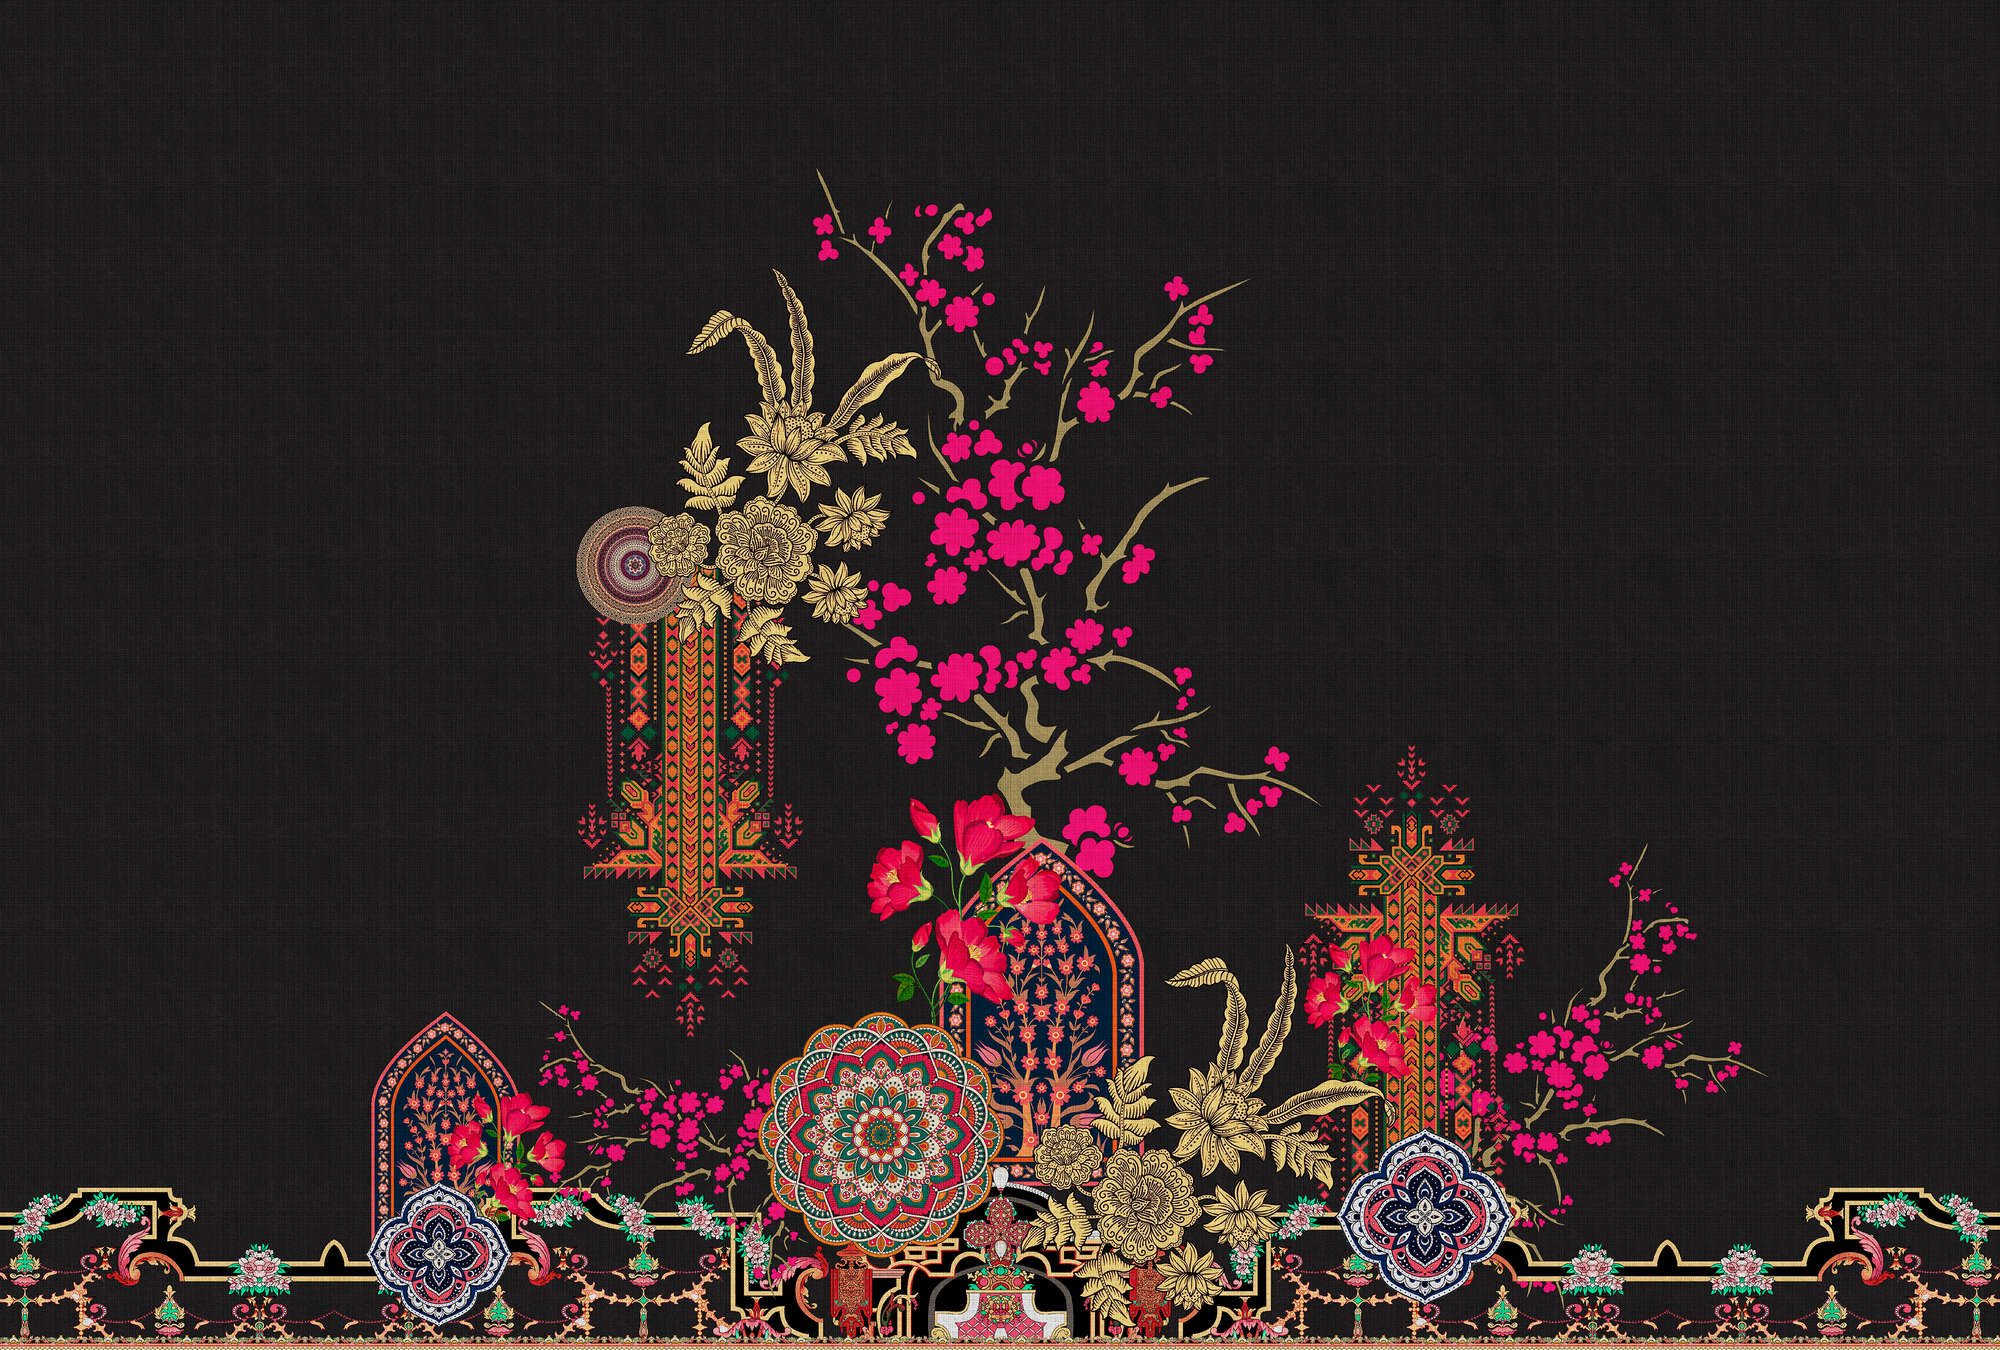             Oriental Garden 2 – Fototapete Tropische Muster & Blüten
        